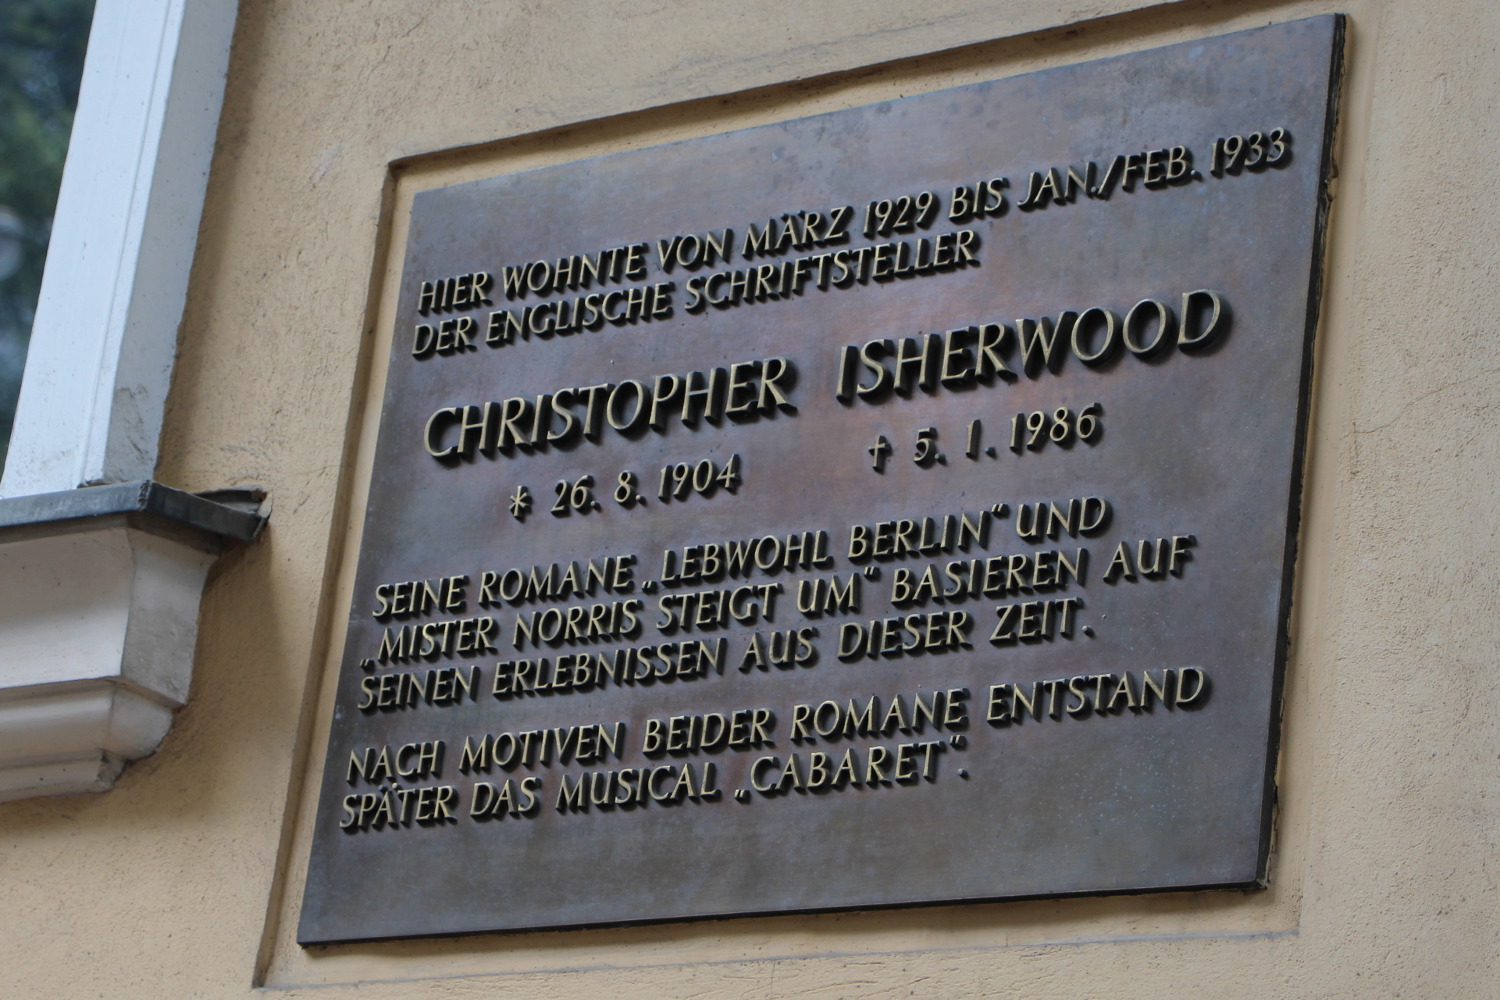 Tafel mit Aufschrift: HIer wohnte von März 1929 bis Jan./Febr. 1933 Christopher Isherwood..